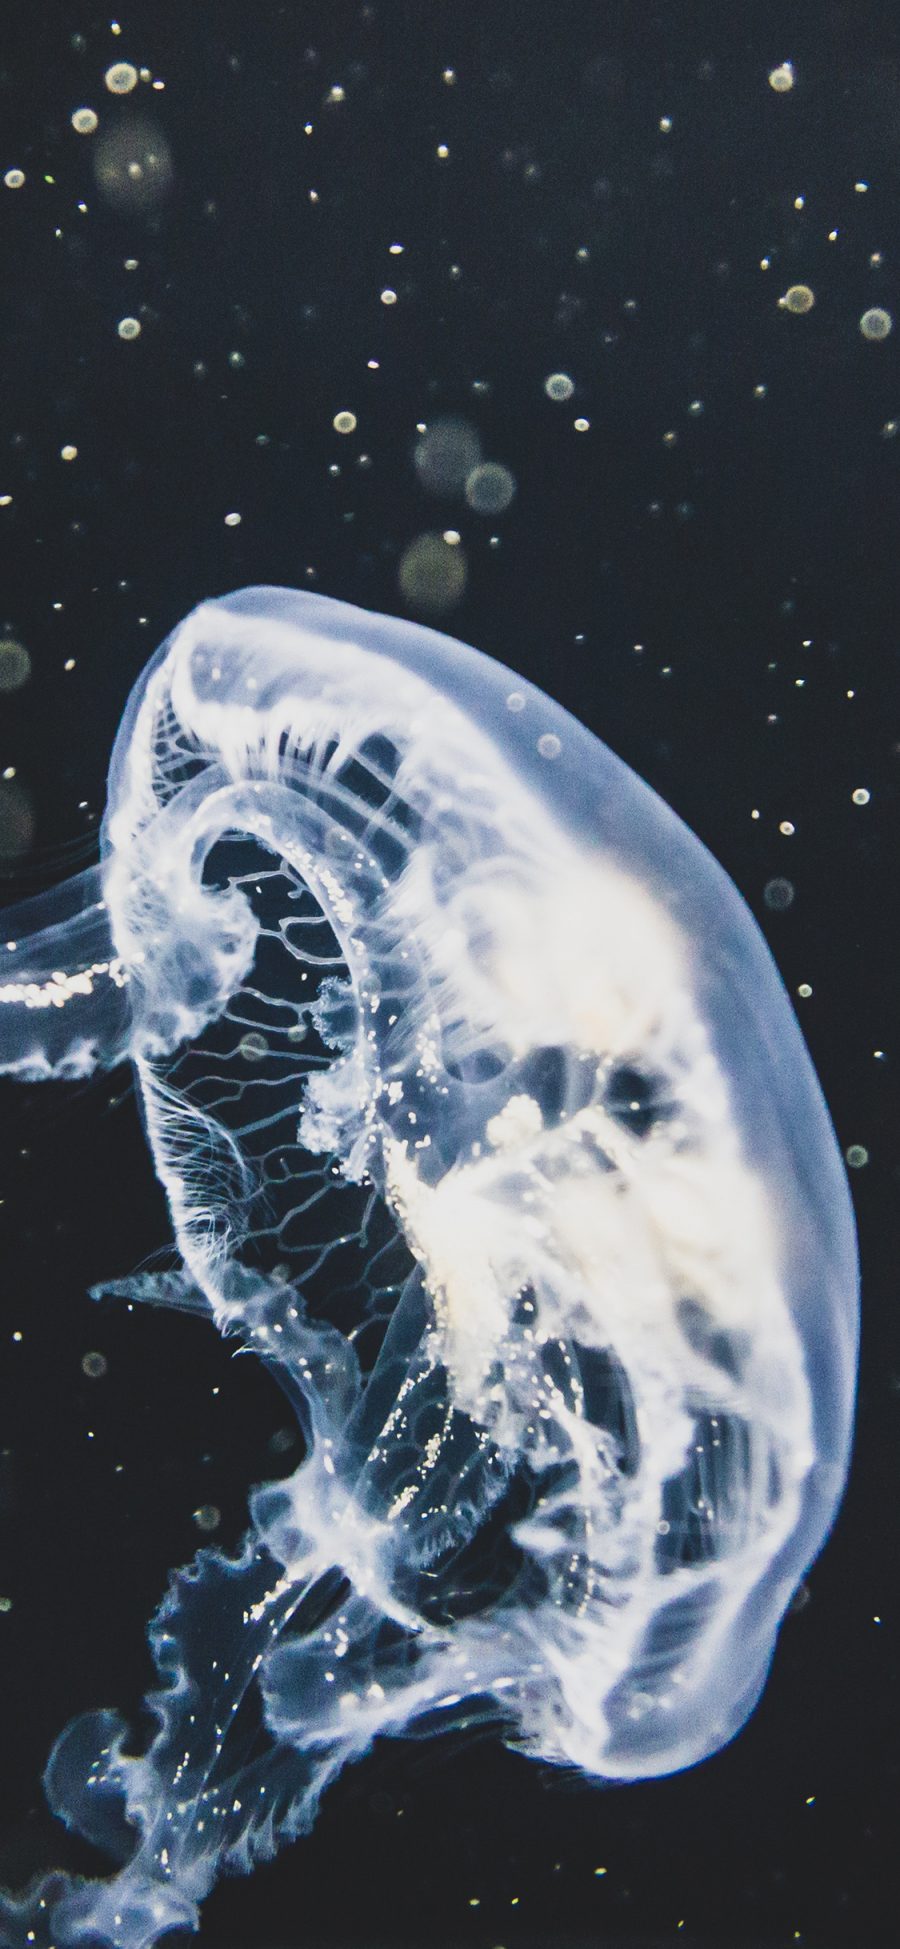 [2436×1125]水母 海洋生物 浮游 荧光 海蜇 触手 苹果手机壁纸图片